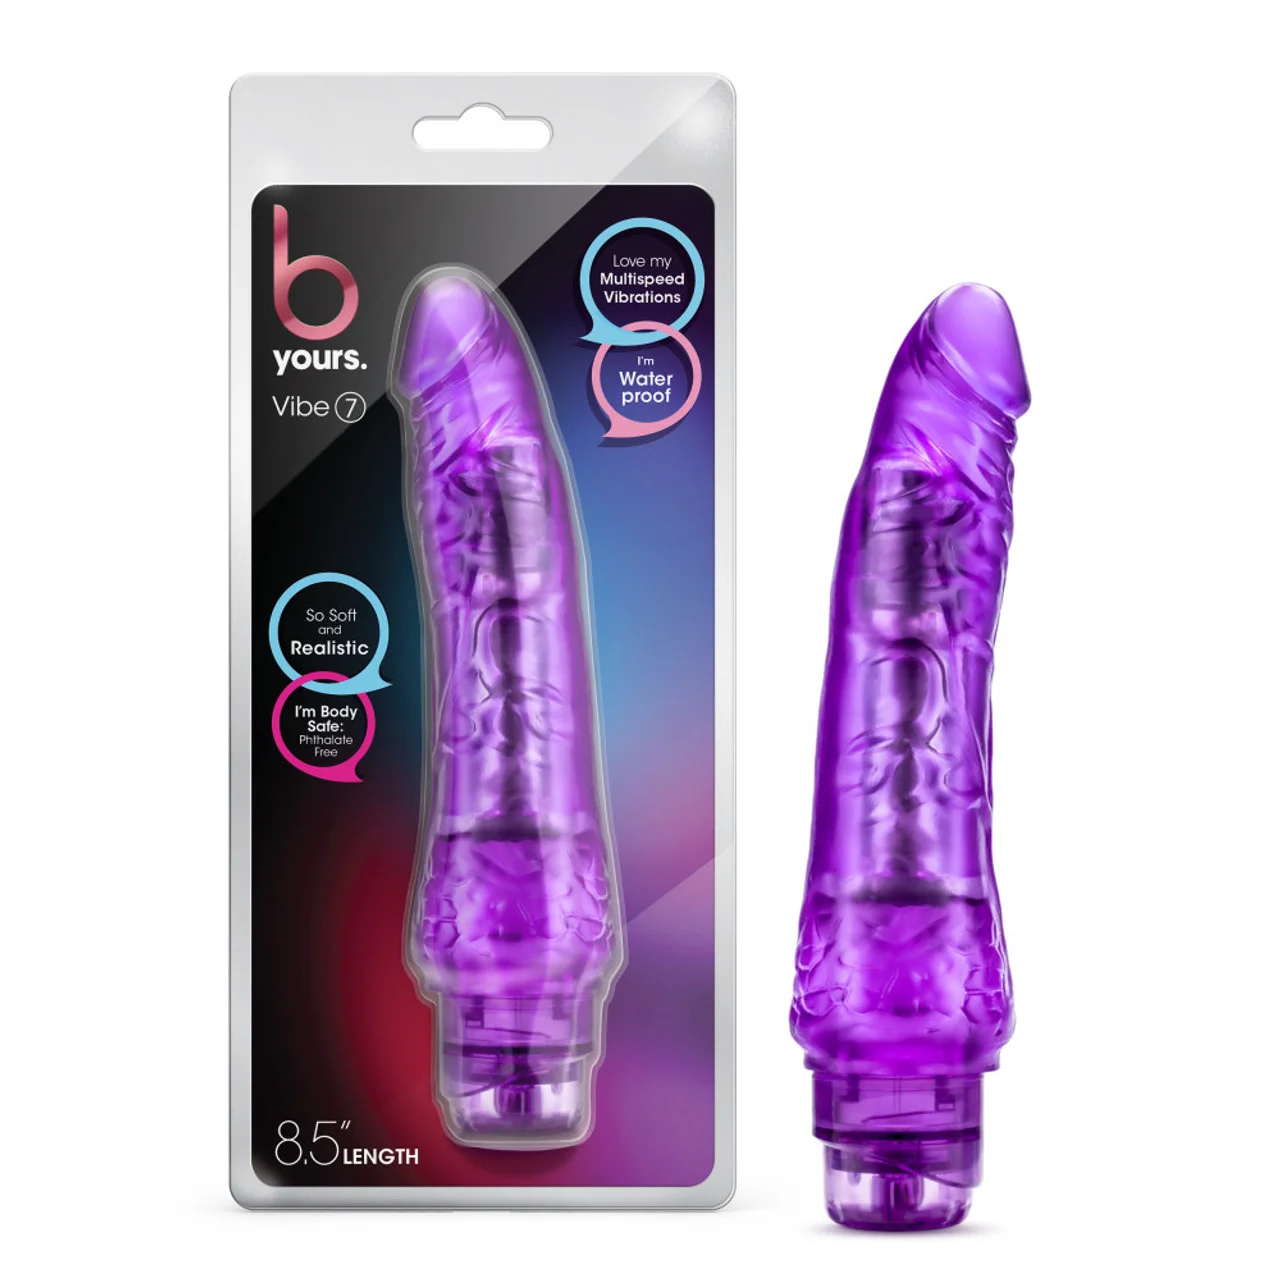 BL-11321 Pene vibrador  Vibe 7  Purple  8.75 pulgadas